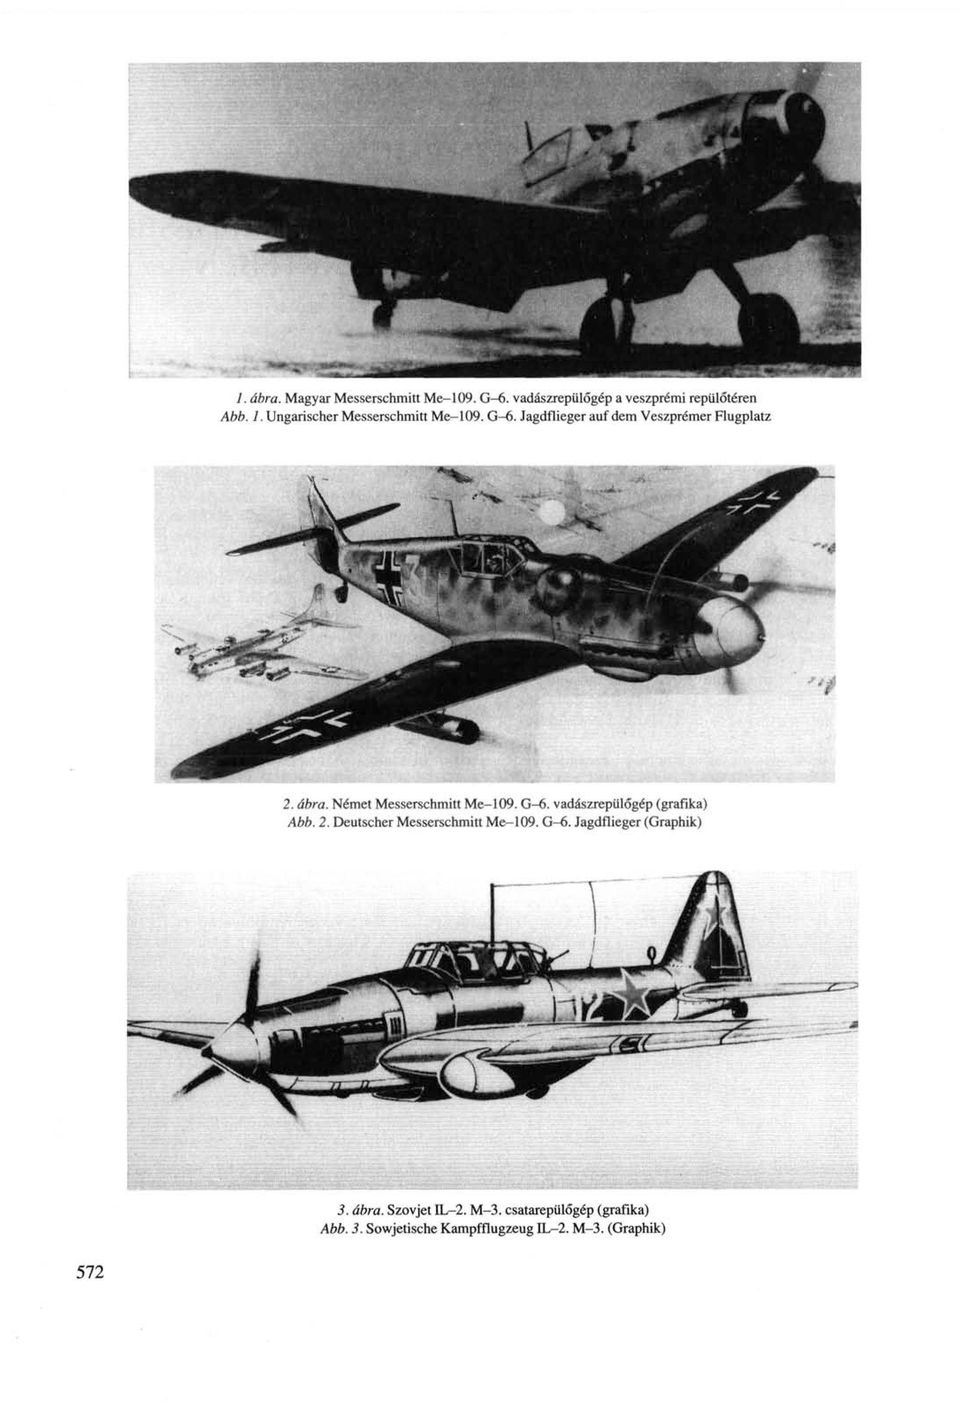 Német Messerschmitt Me-109. G-6. vadászrepülőgép (grafika) Abb. 2. Deutscher Messerschmitt Me-109. G-6. Jagdflieger (Graphik) 3.